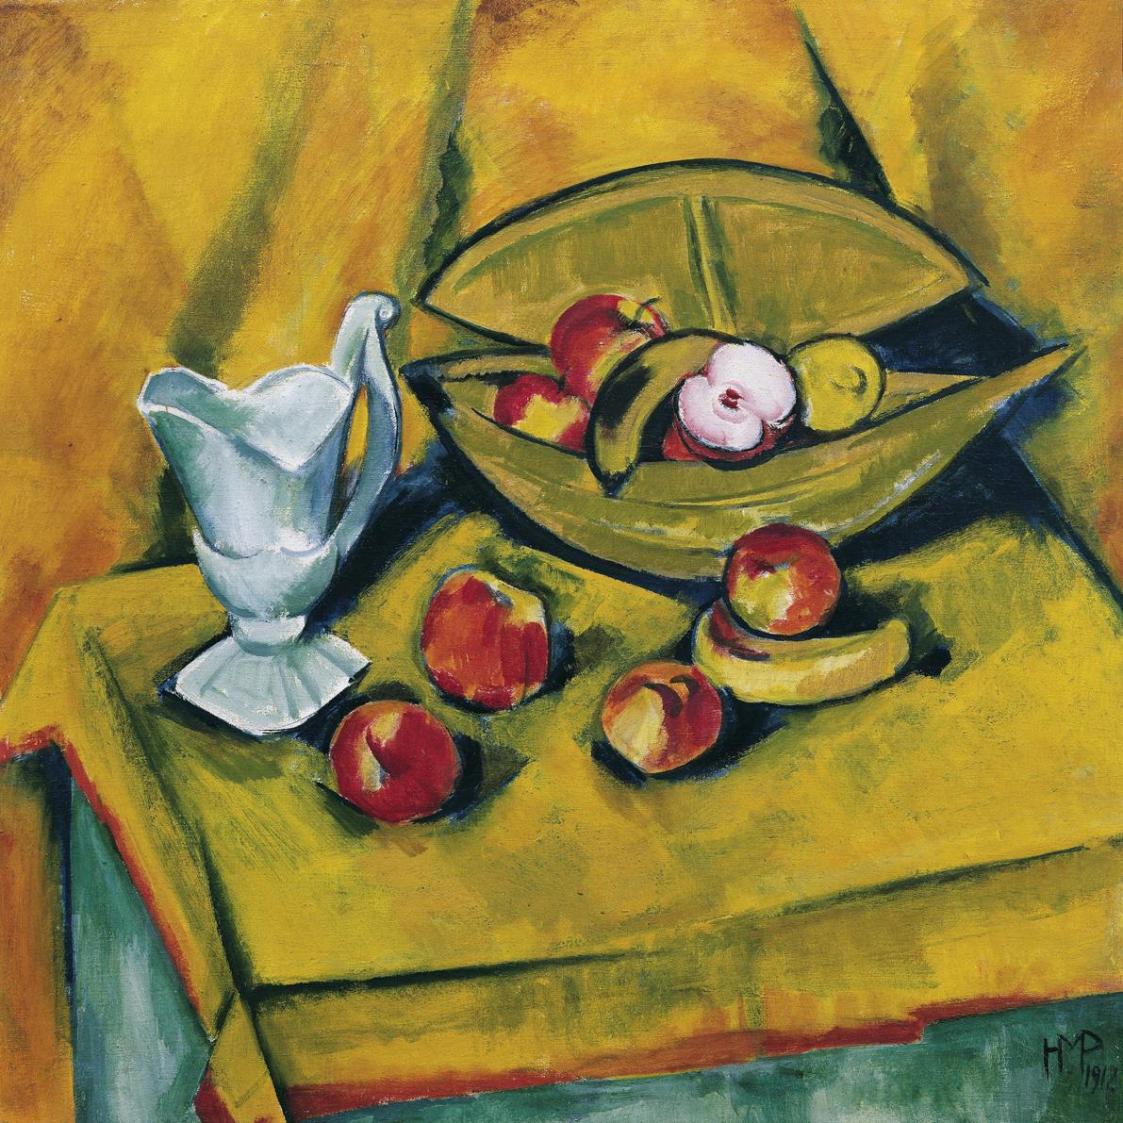 Max Pechstein, Stillleben mit Äpfeln und Porzellankanne, 1912, Öl auf Leinwand, 88 x 89 cm, Bel ...